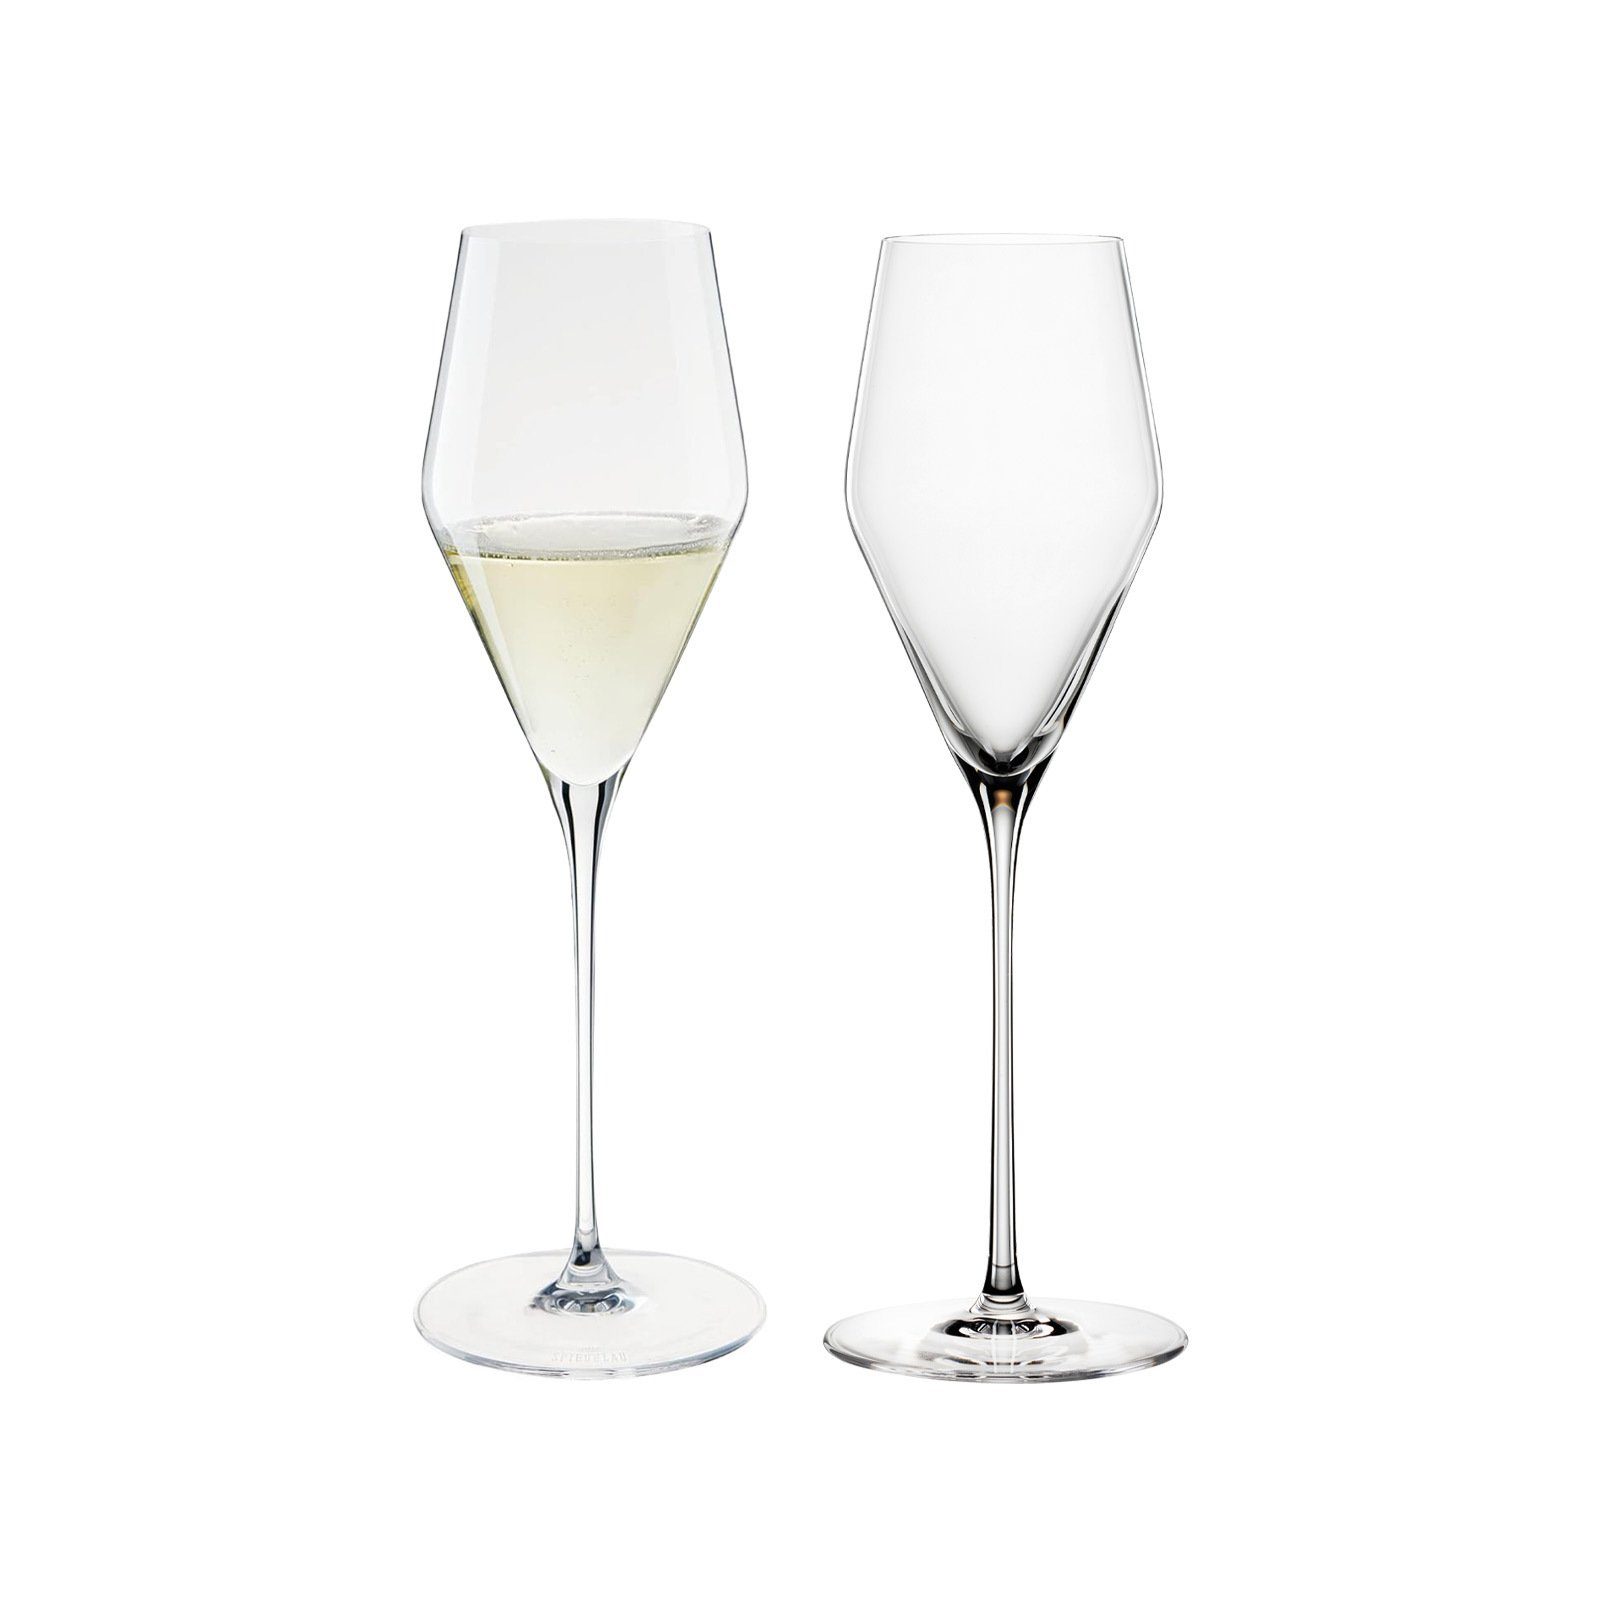 SPIEGELAU Champagnerglas Definition Бокалы для шампанского 250 ml 2er Set, Glas